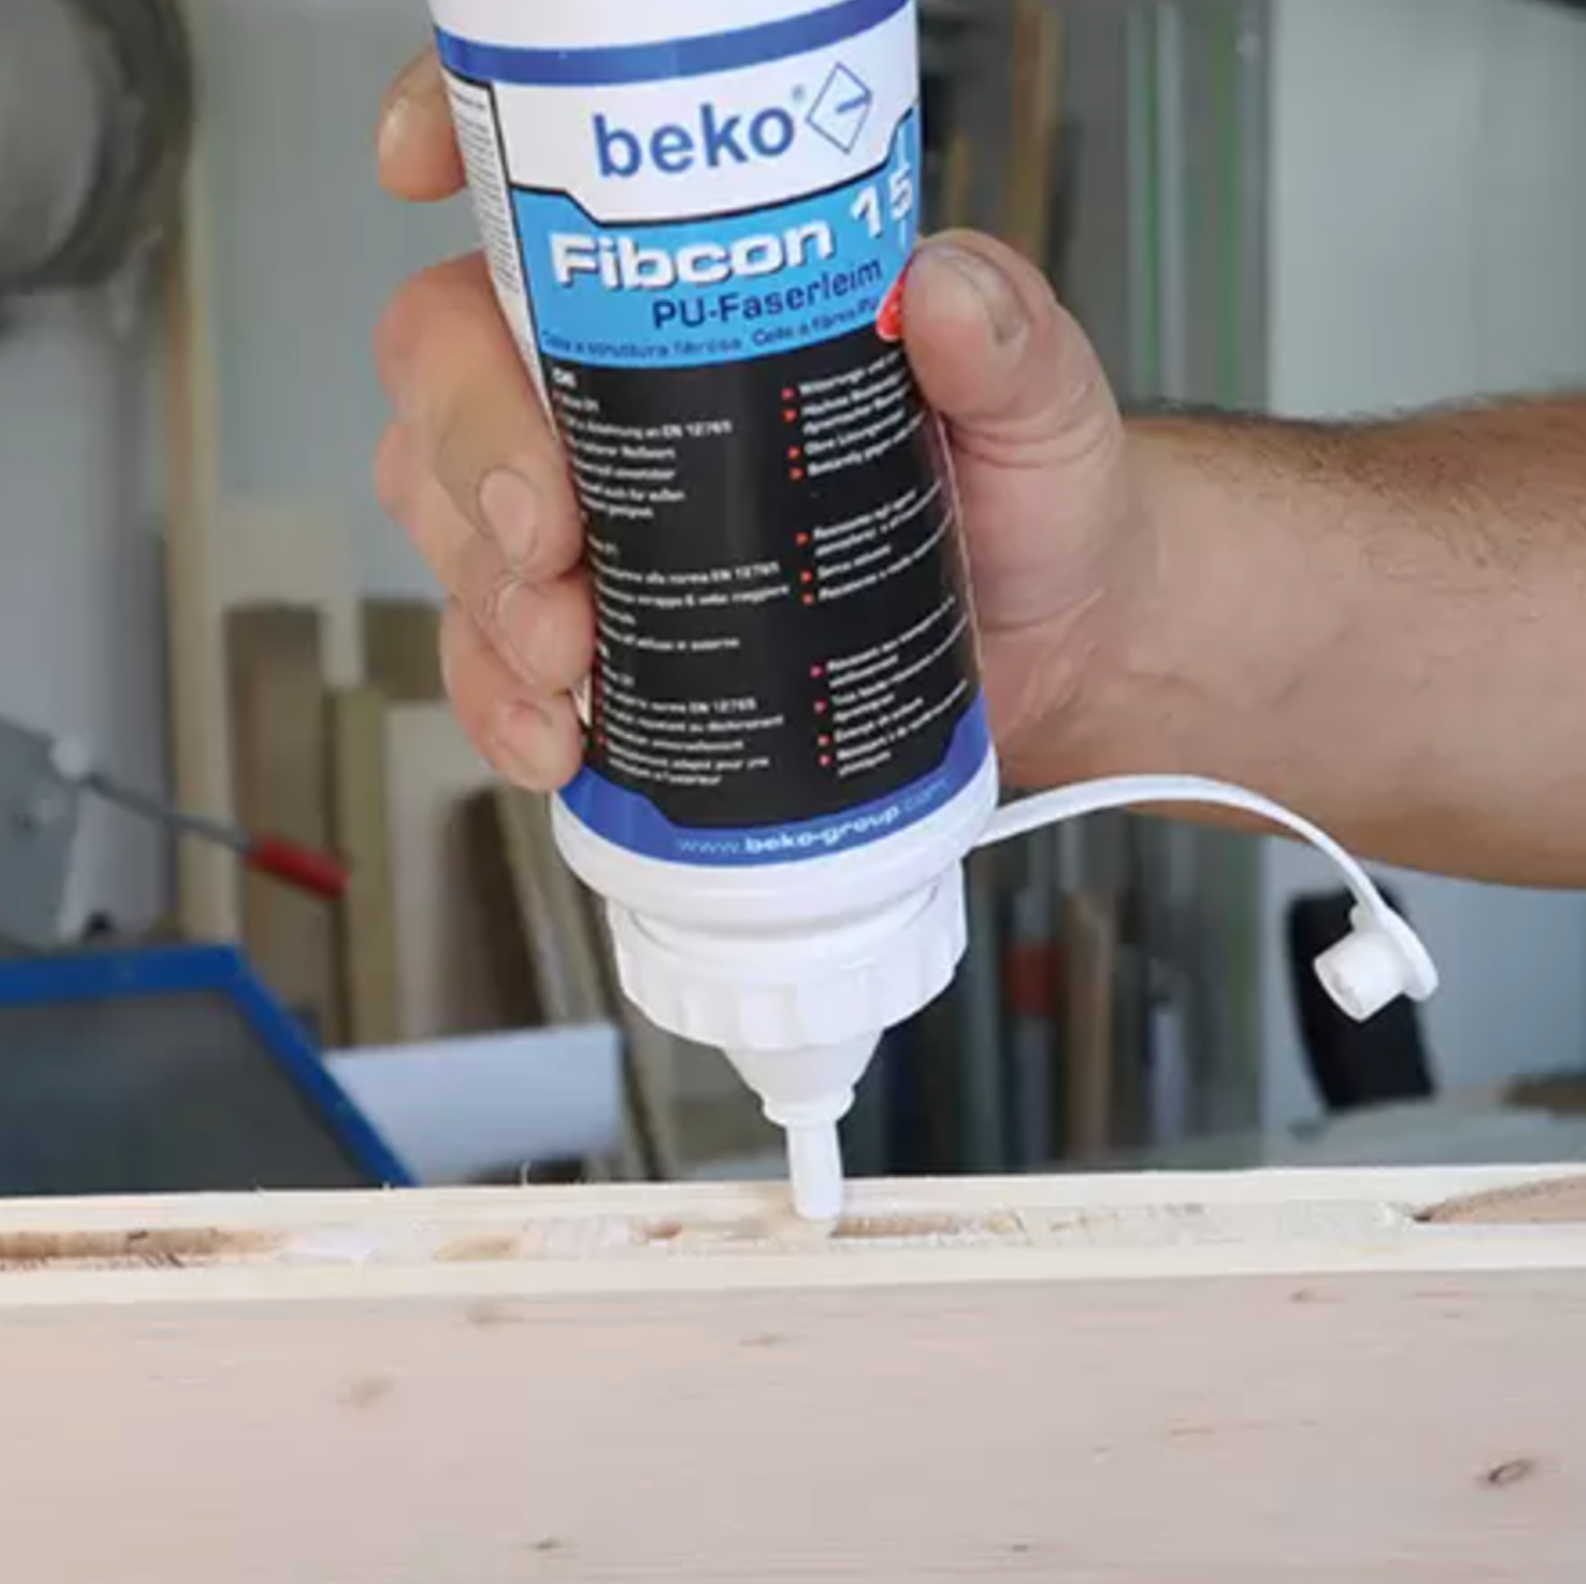 beko® Fibcon 5/15/60 PU-Faserleim